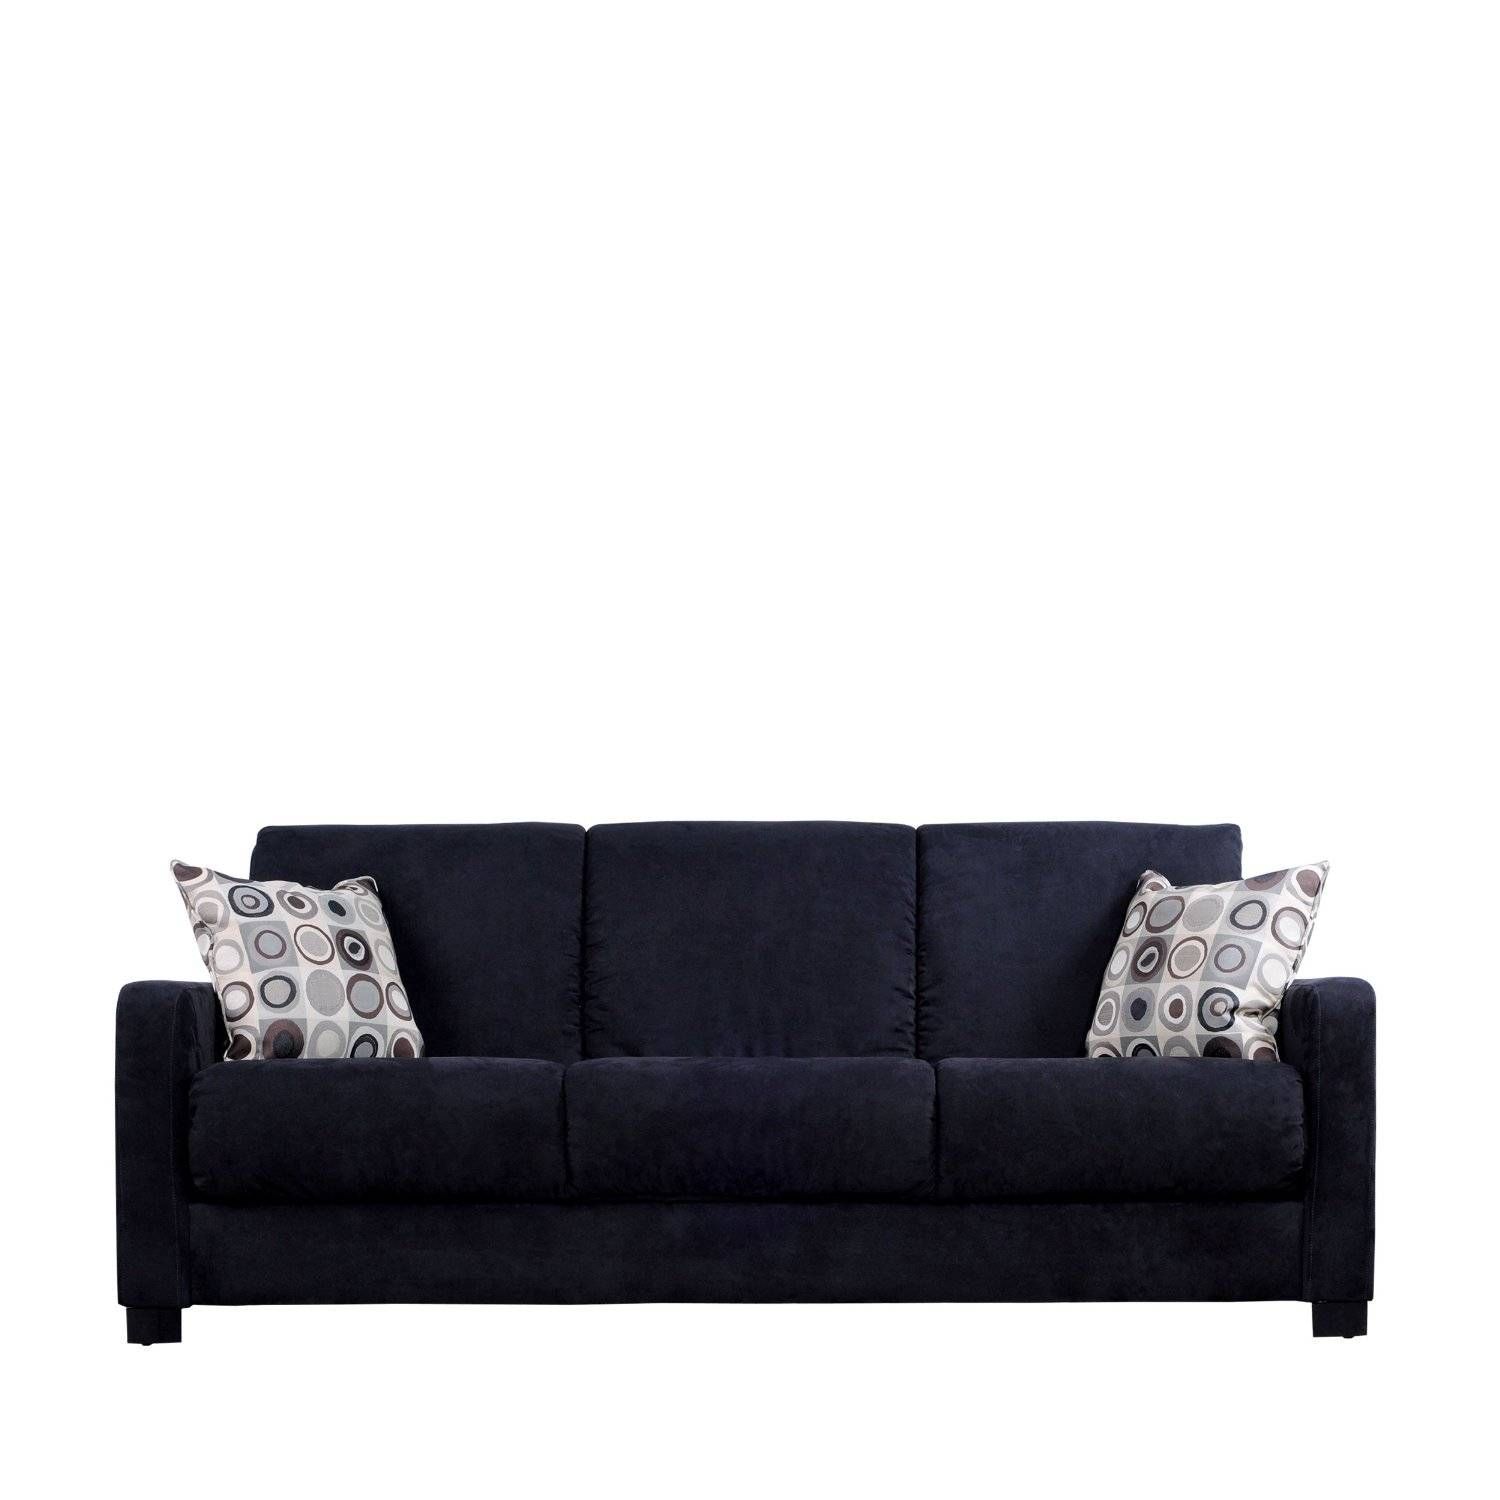 Black Sofas | Tehranmix Decoration Pertaining To Cheap Black Sofas (View 5 of 30)